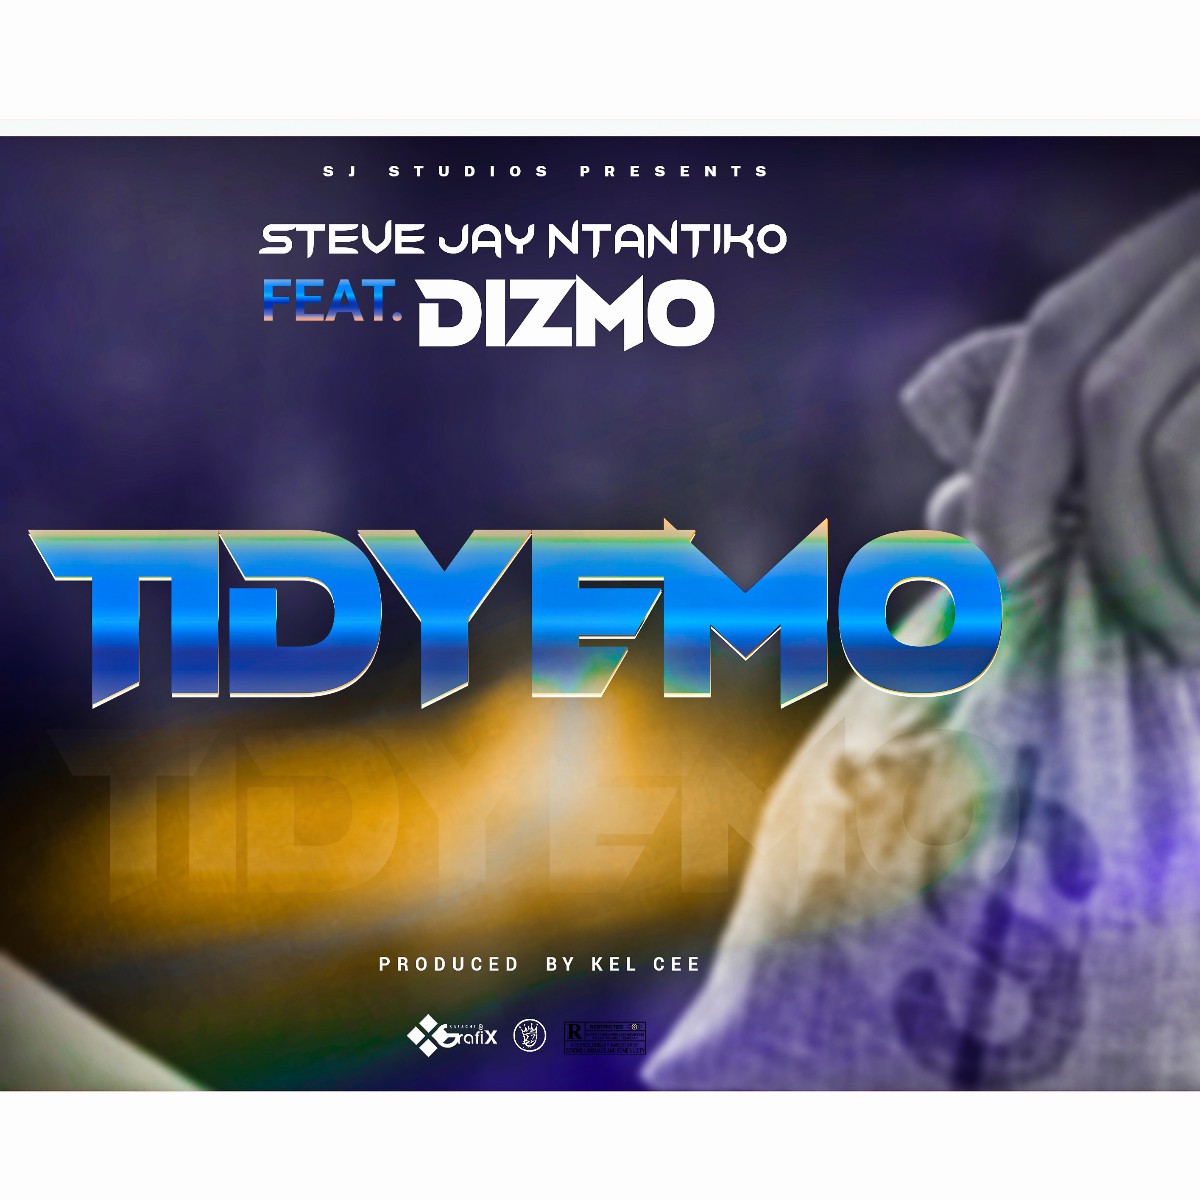 Steve Jay Ntantiko ft. Dizmo - Tidyemo